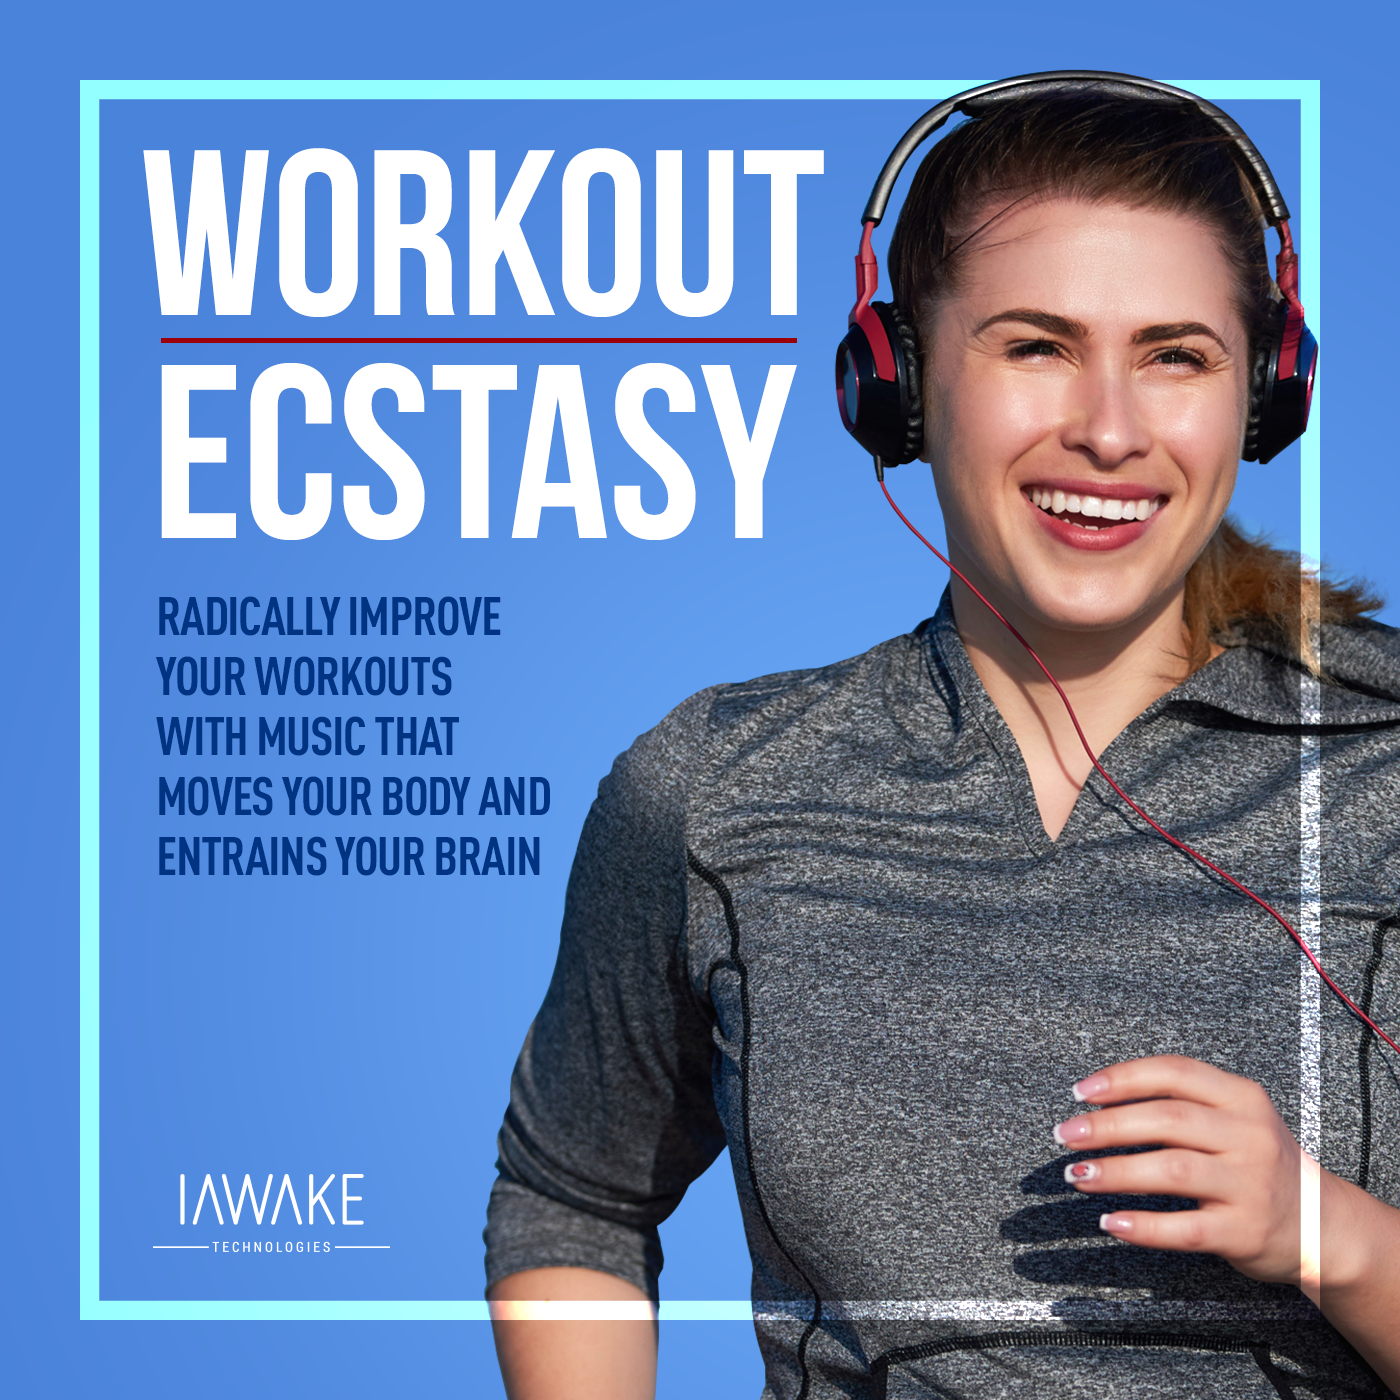 Workout Ecstasy Vol I